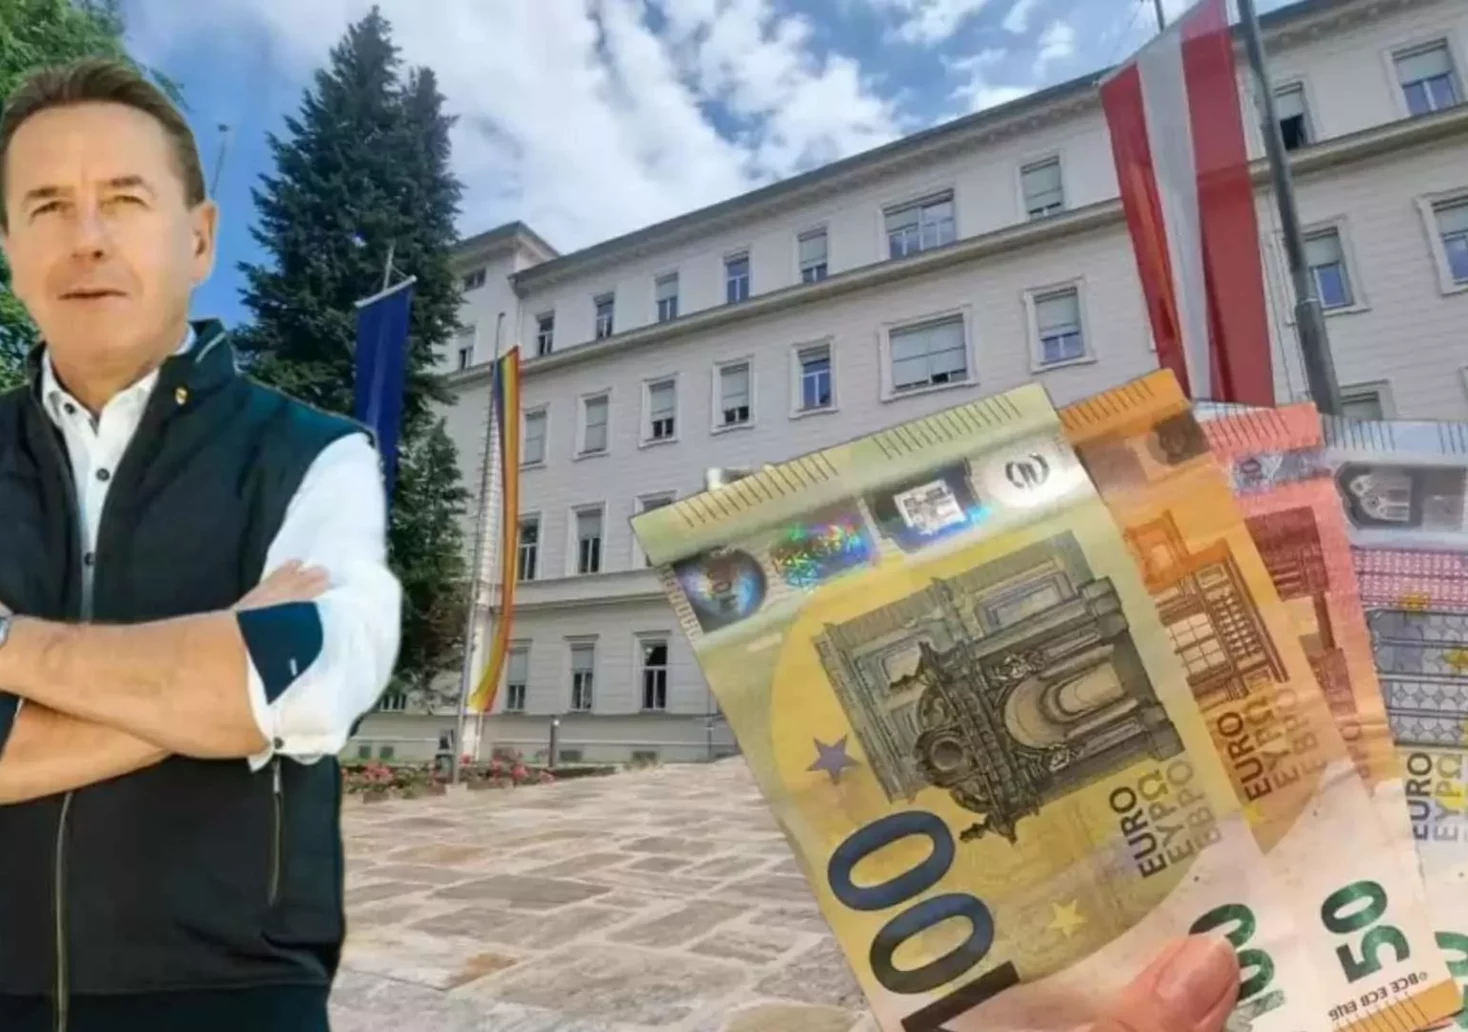 Foto in Beitrag von 5min.at: Zu sehen ist FPÖ-Chef Erwin Angerer, etwas Geld und die Landesregierung.